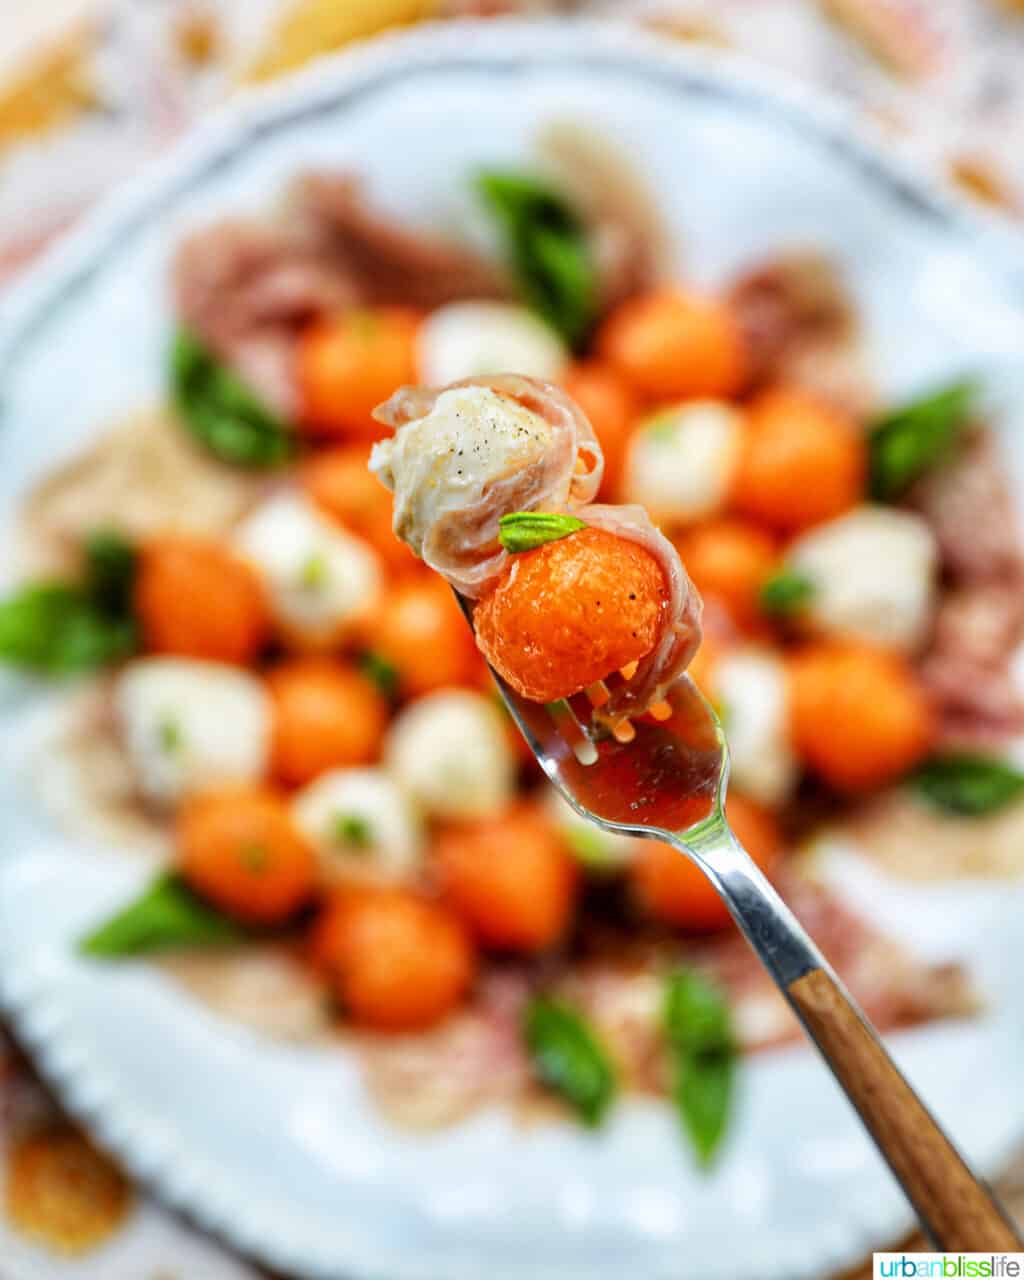 fork holding cantaloupe, mozzarella ball, prosciutto and basil over blurred bowl of melon prosciutto caprese salad.